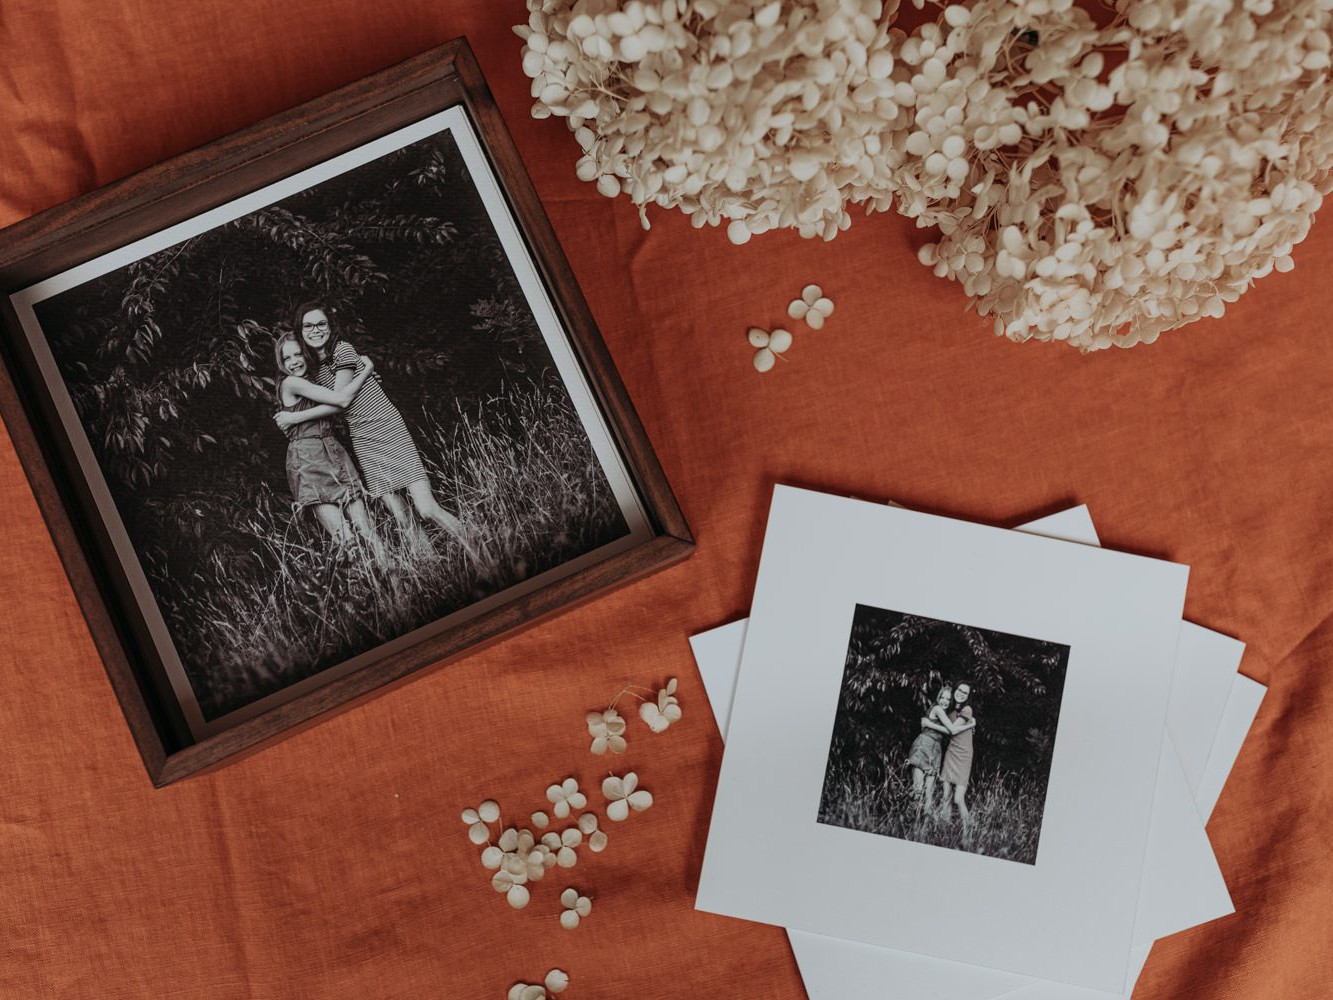 Houten vitrine doos met fotoprints op een oranje achtergrond